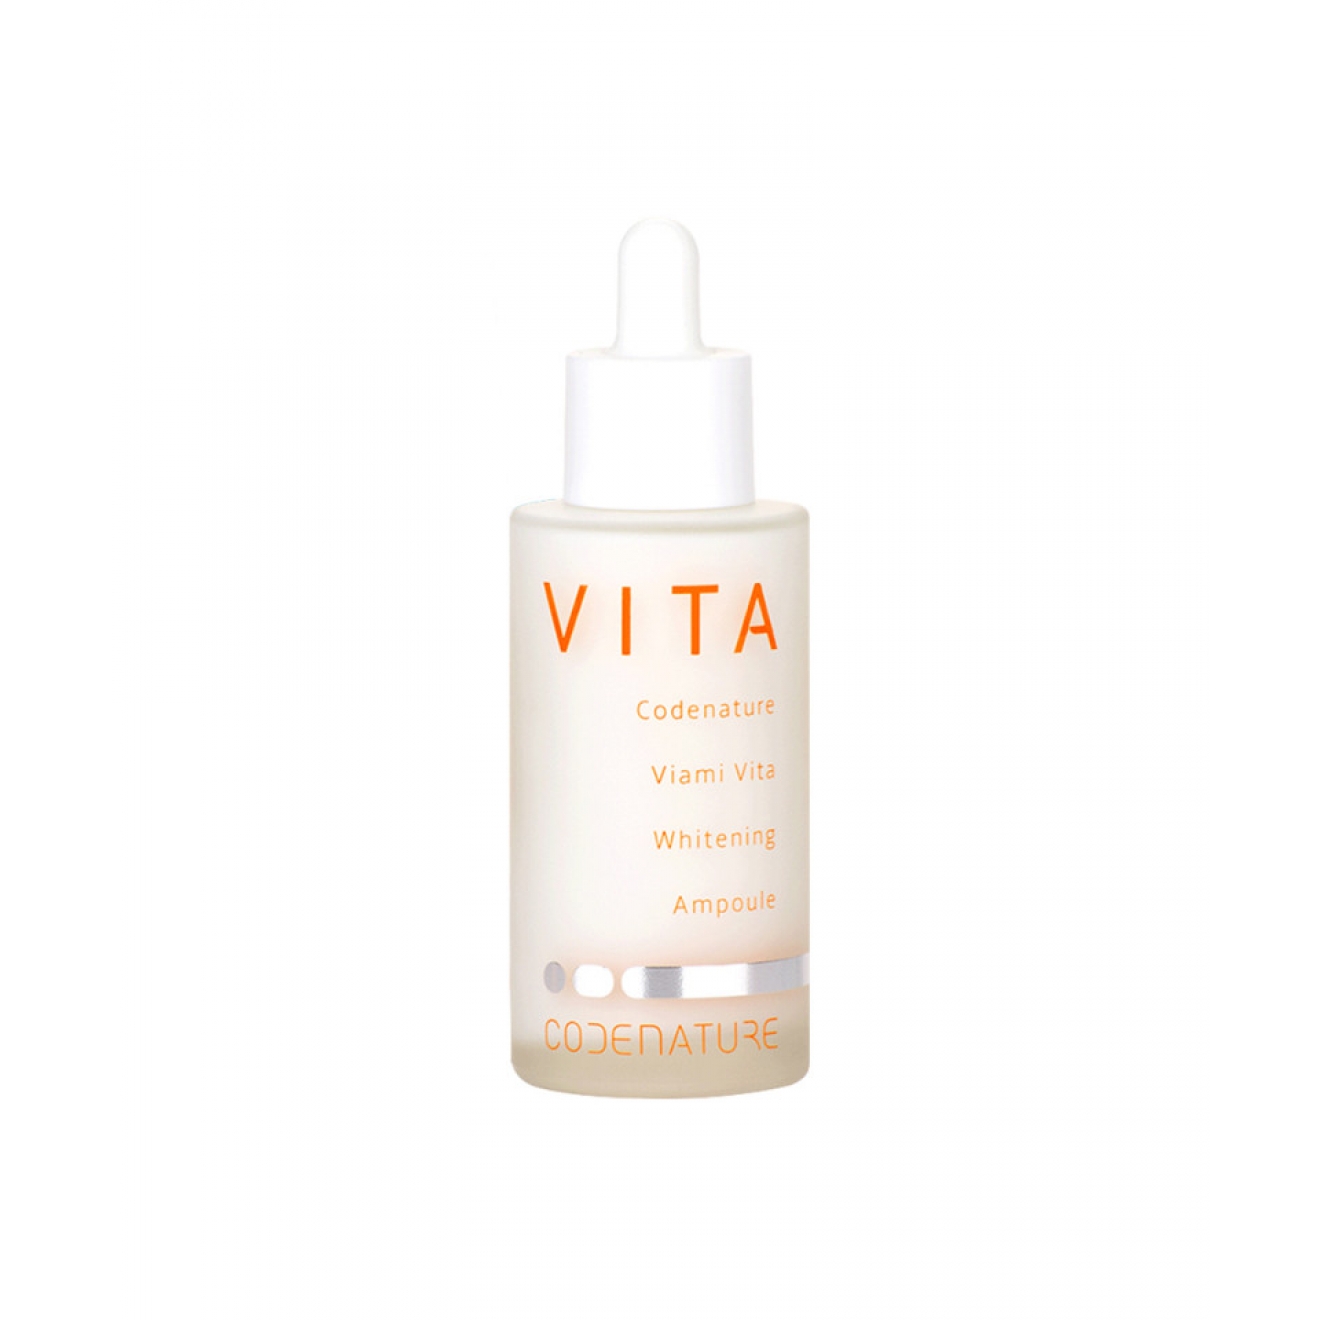 Codenature Viami Vita Whitening Ampoule,50 ml